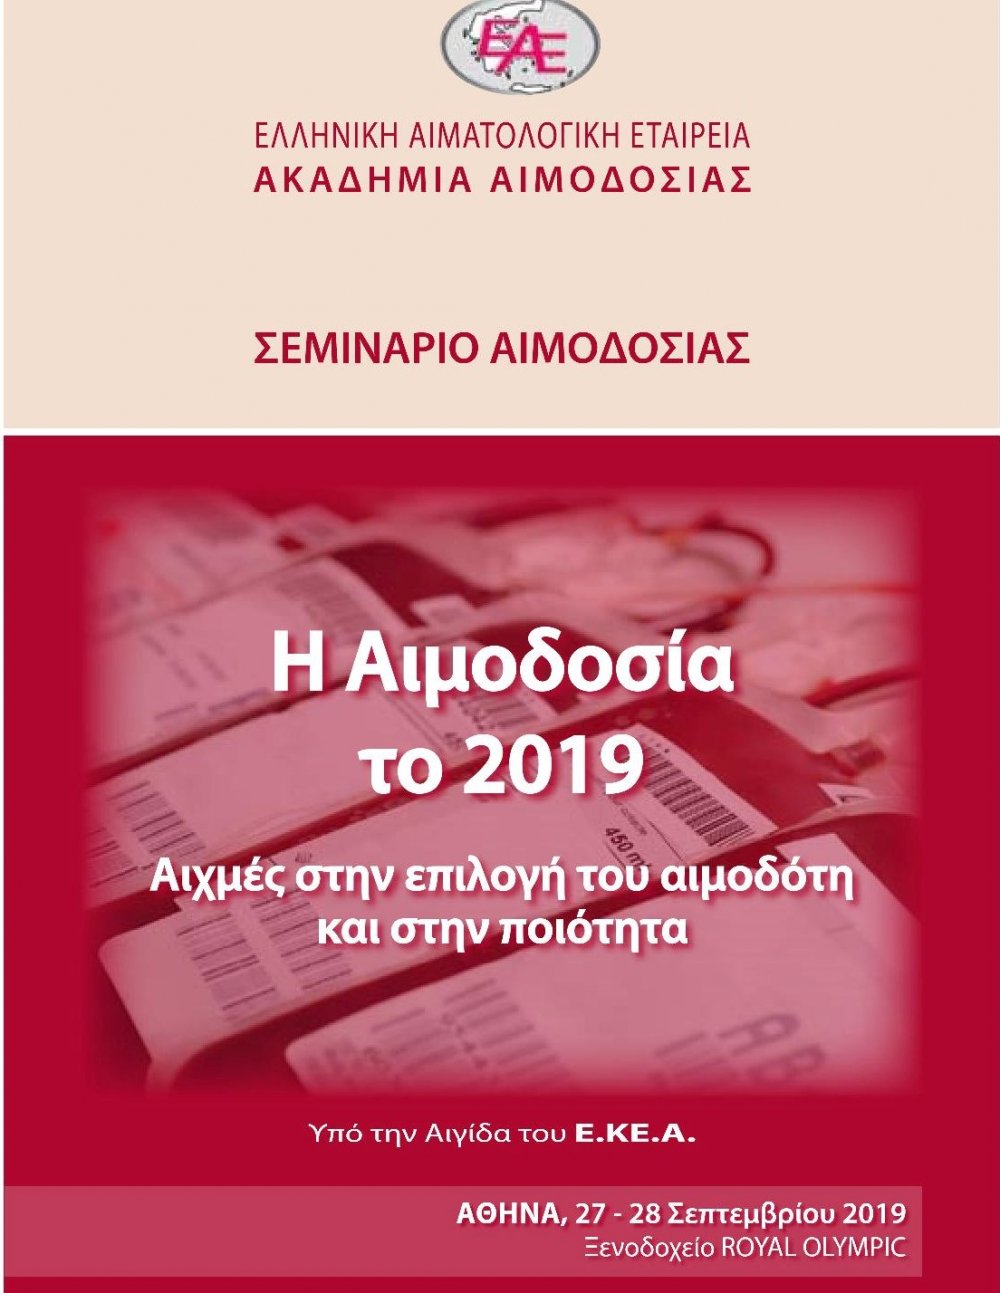 Σεμινάριο «Η Αιμοδοσία το 2019 - Αιχμές στην επιλογή του αιμοδότη και στην ποιότητα» - Ακαδημία Αιμοδοσίας Ε.Α.Ε - 27 &amp; 28 Σεπτεμβρίου 2019, Αθήνα